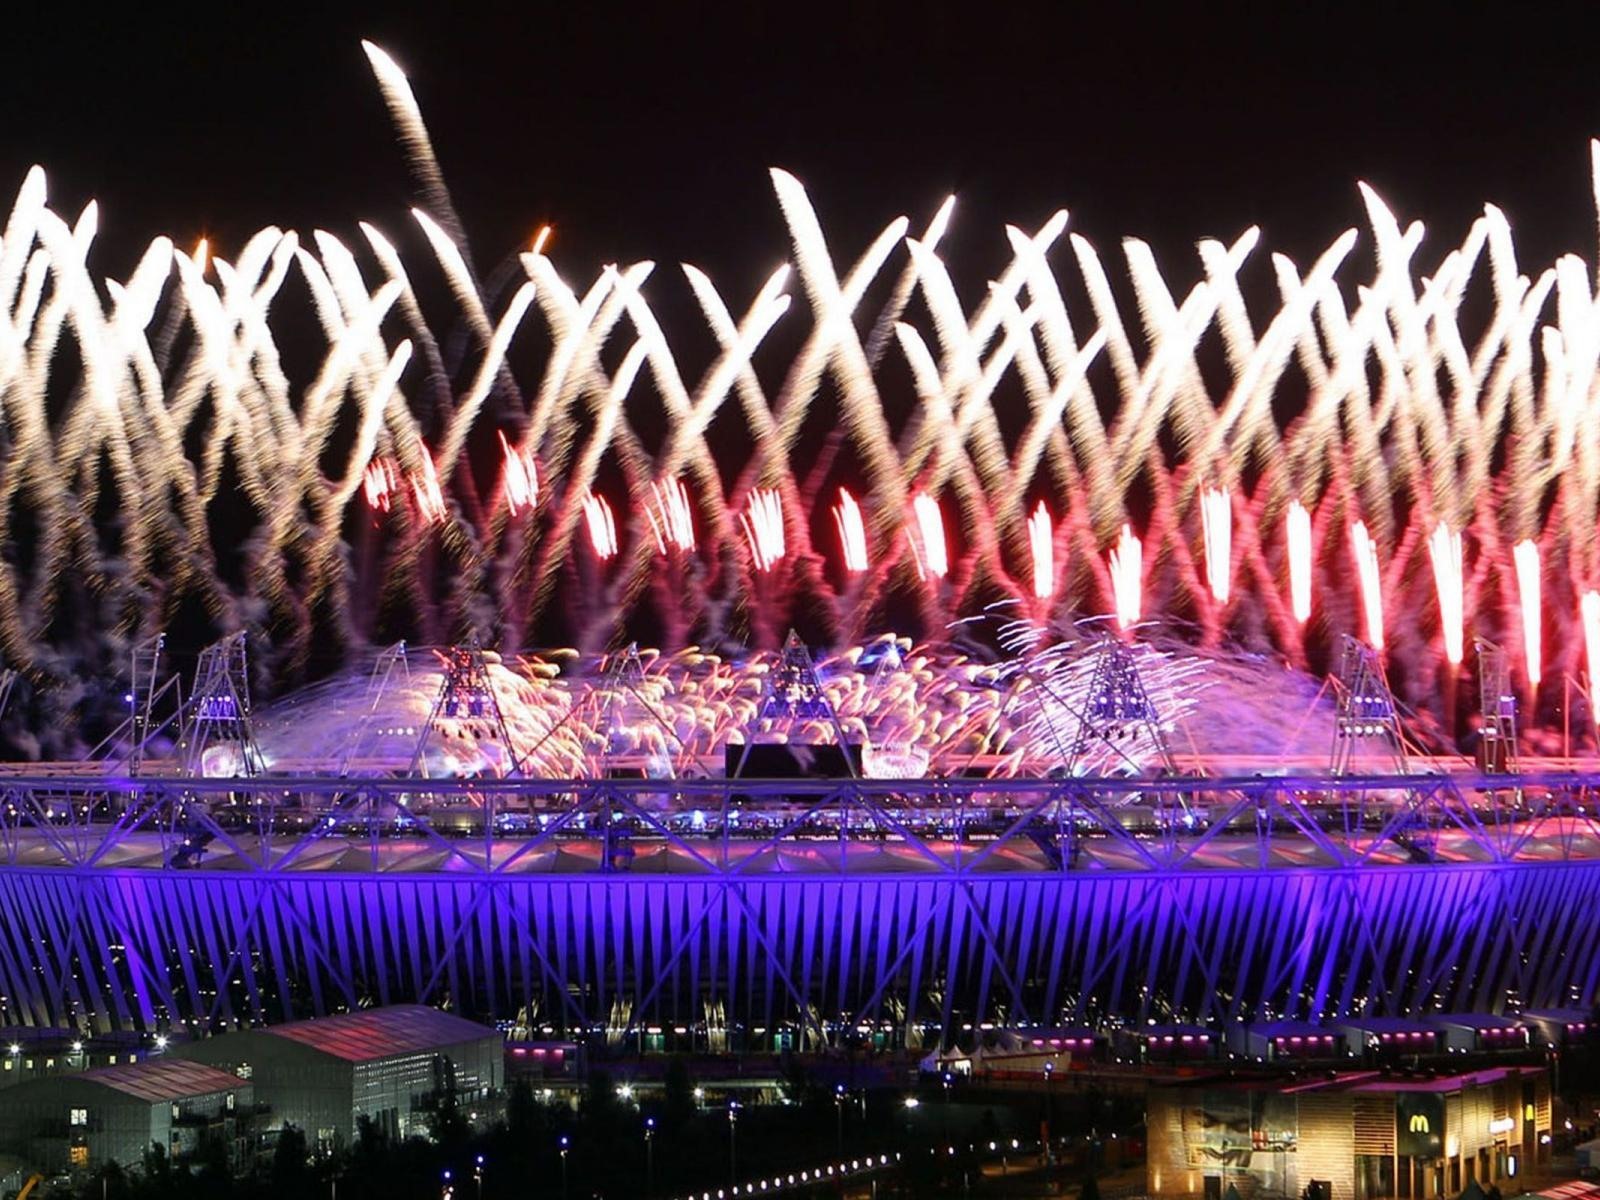 Londres 2012 Olimpiadas fondos temáticos (1) #13 - 1600x1200